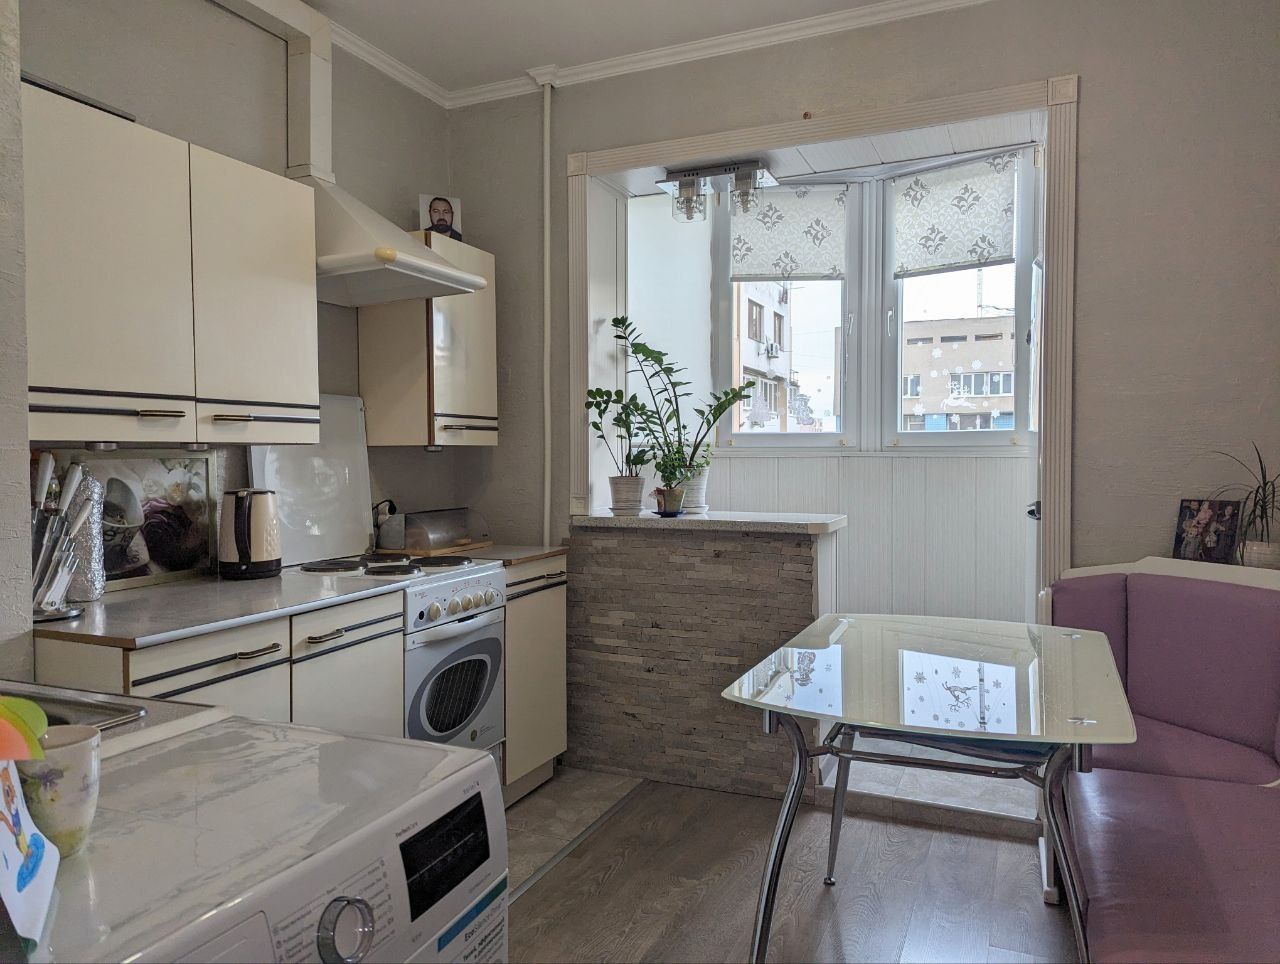 Продам 1-комнатную квартиру на Таирова (Вузовский) сотовый проект.